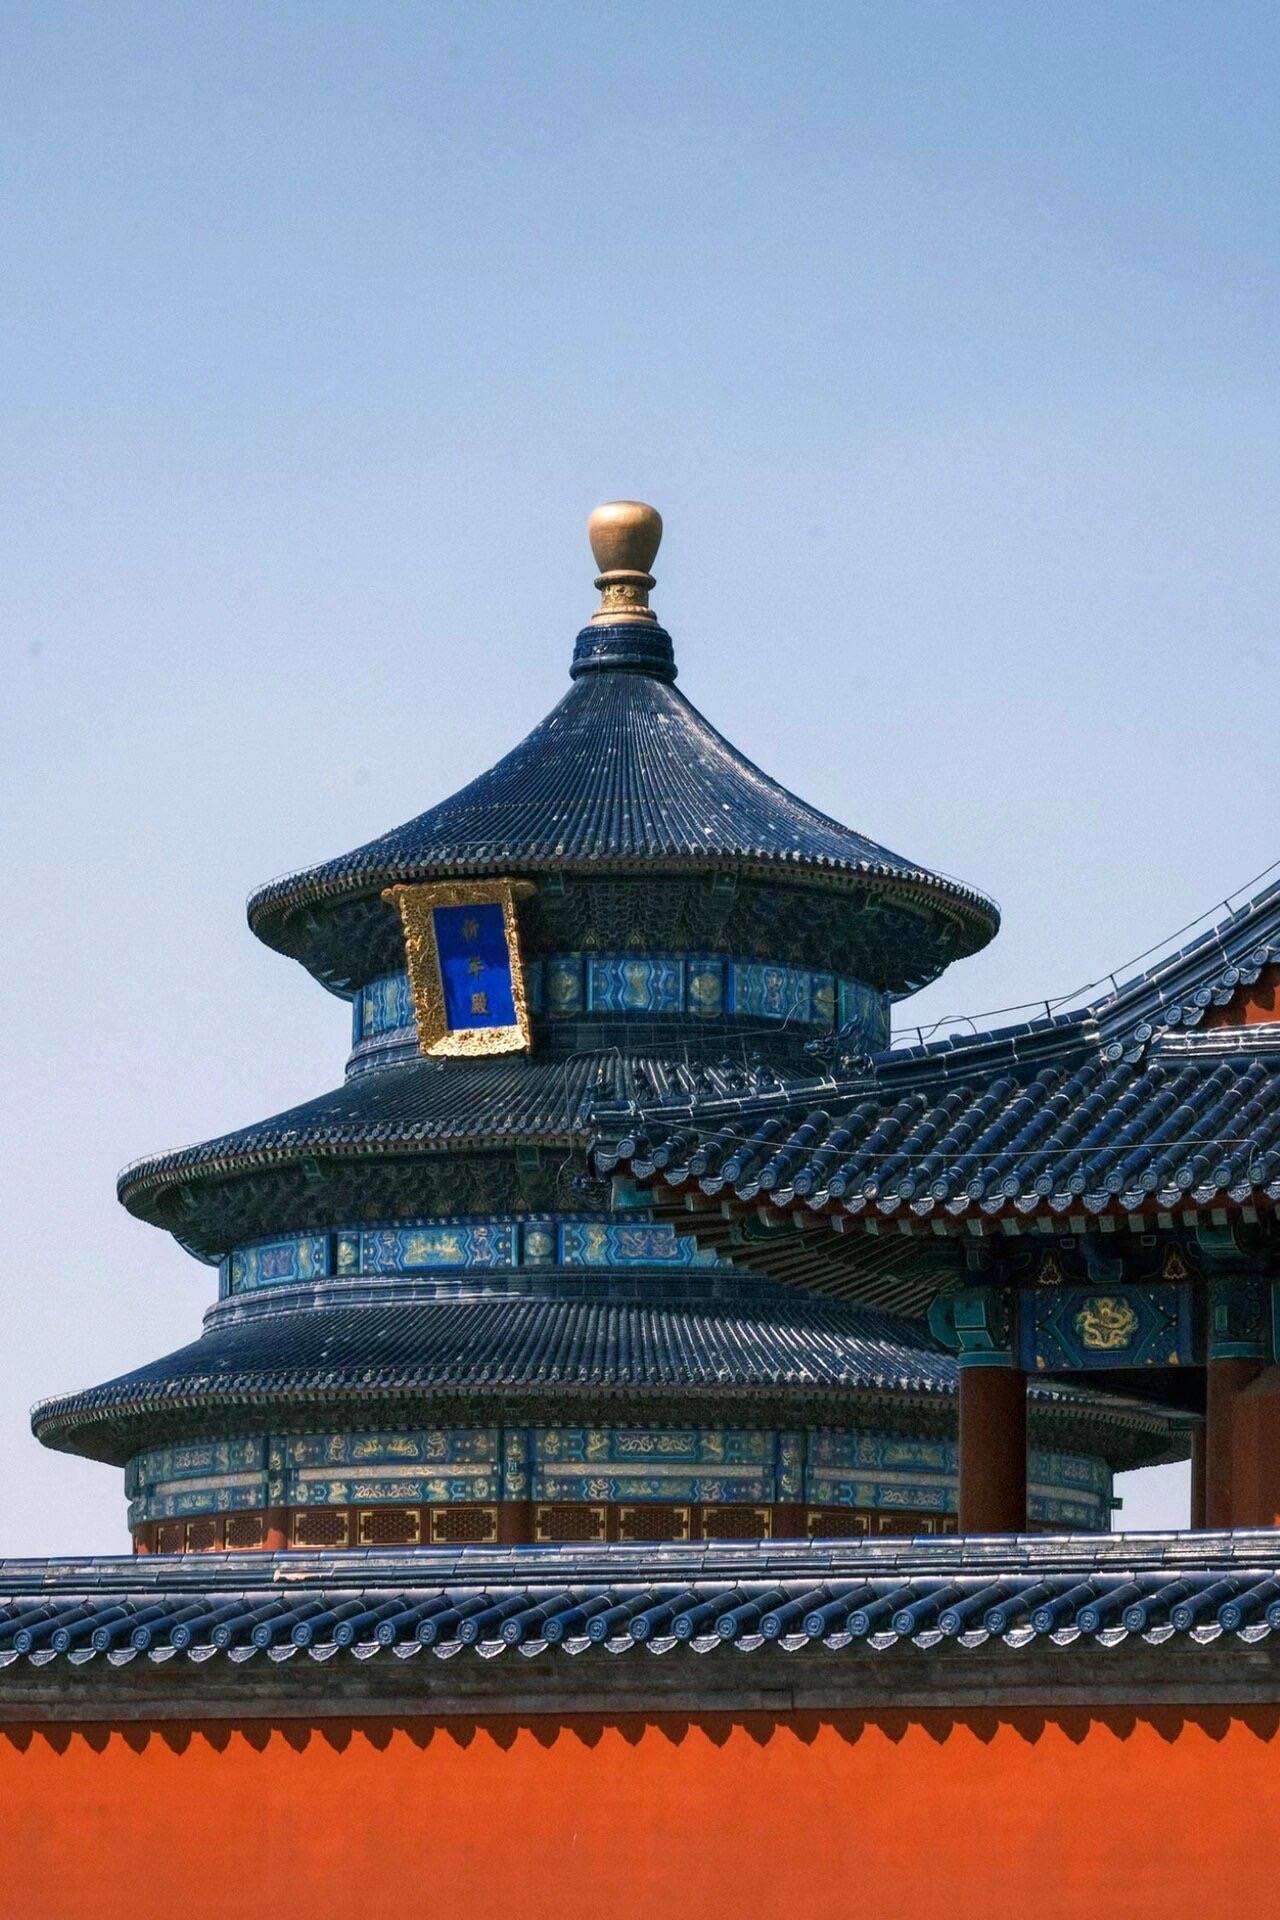 故宫天坛旅游5天报价是多少 北京5日游跟团报价人均1180